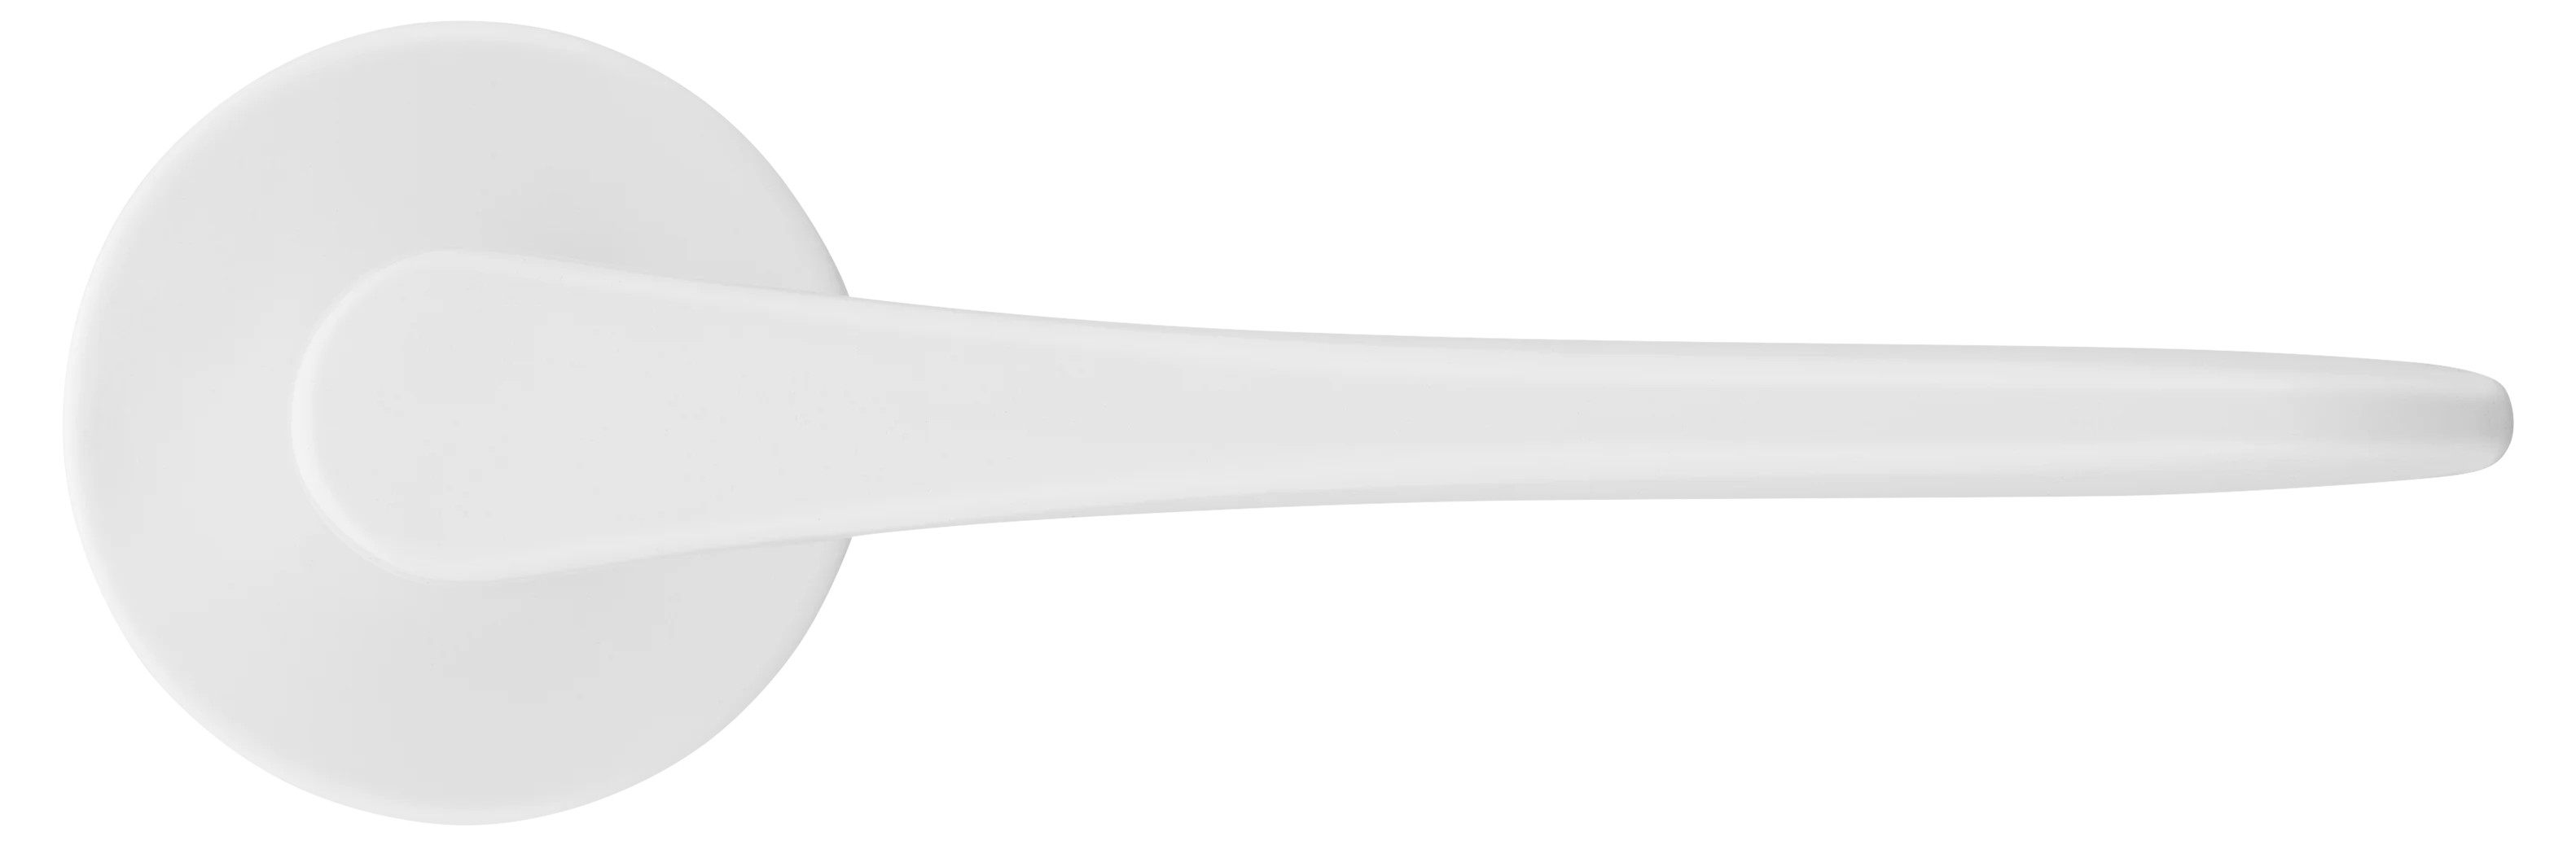 AULA R5 BIA, ручка дверная на розетке 7мм, цвет -  белый фото купить в Краснодаре